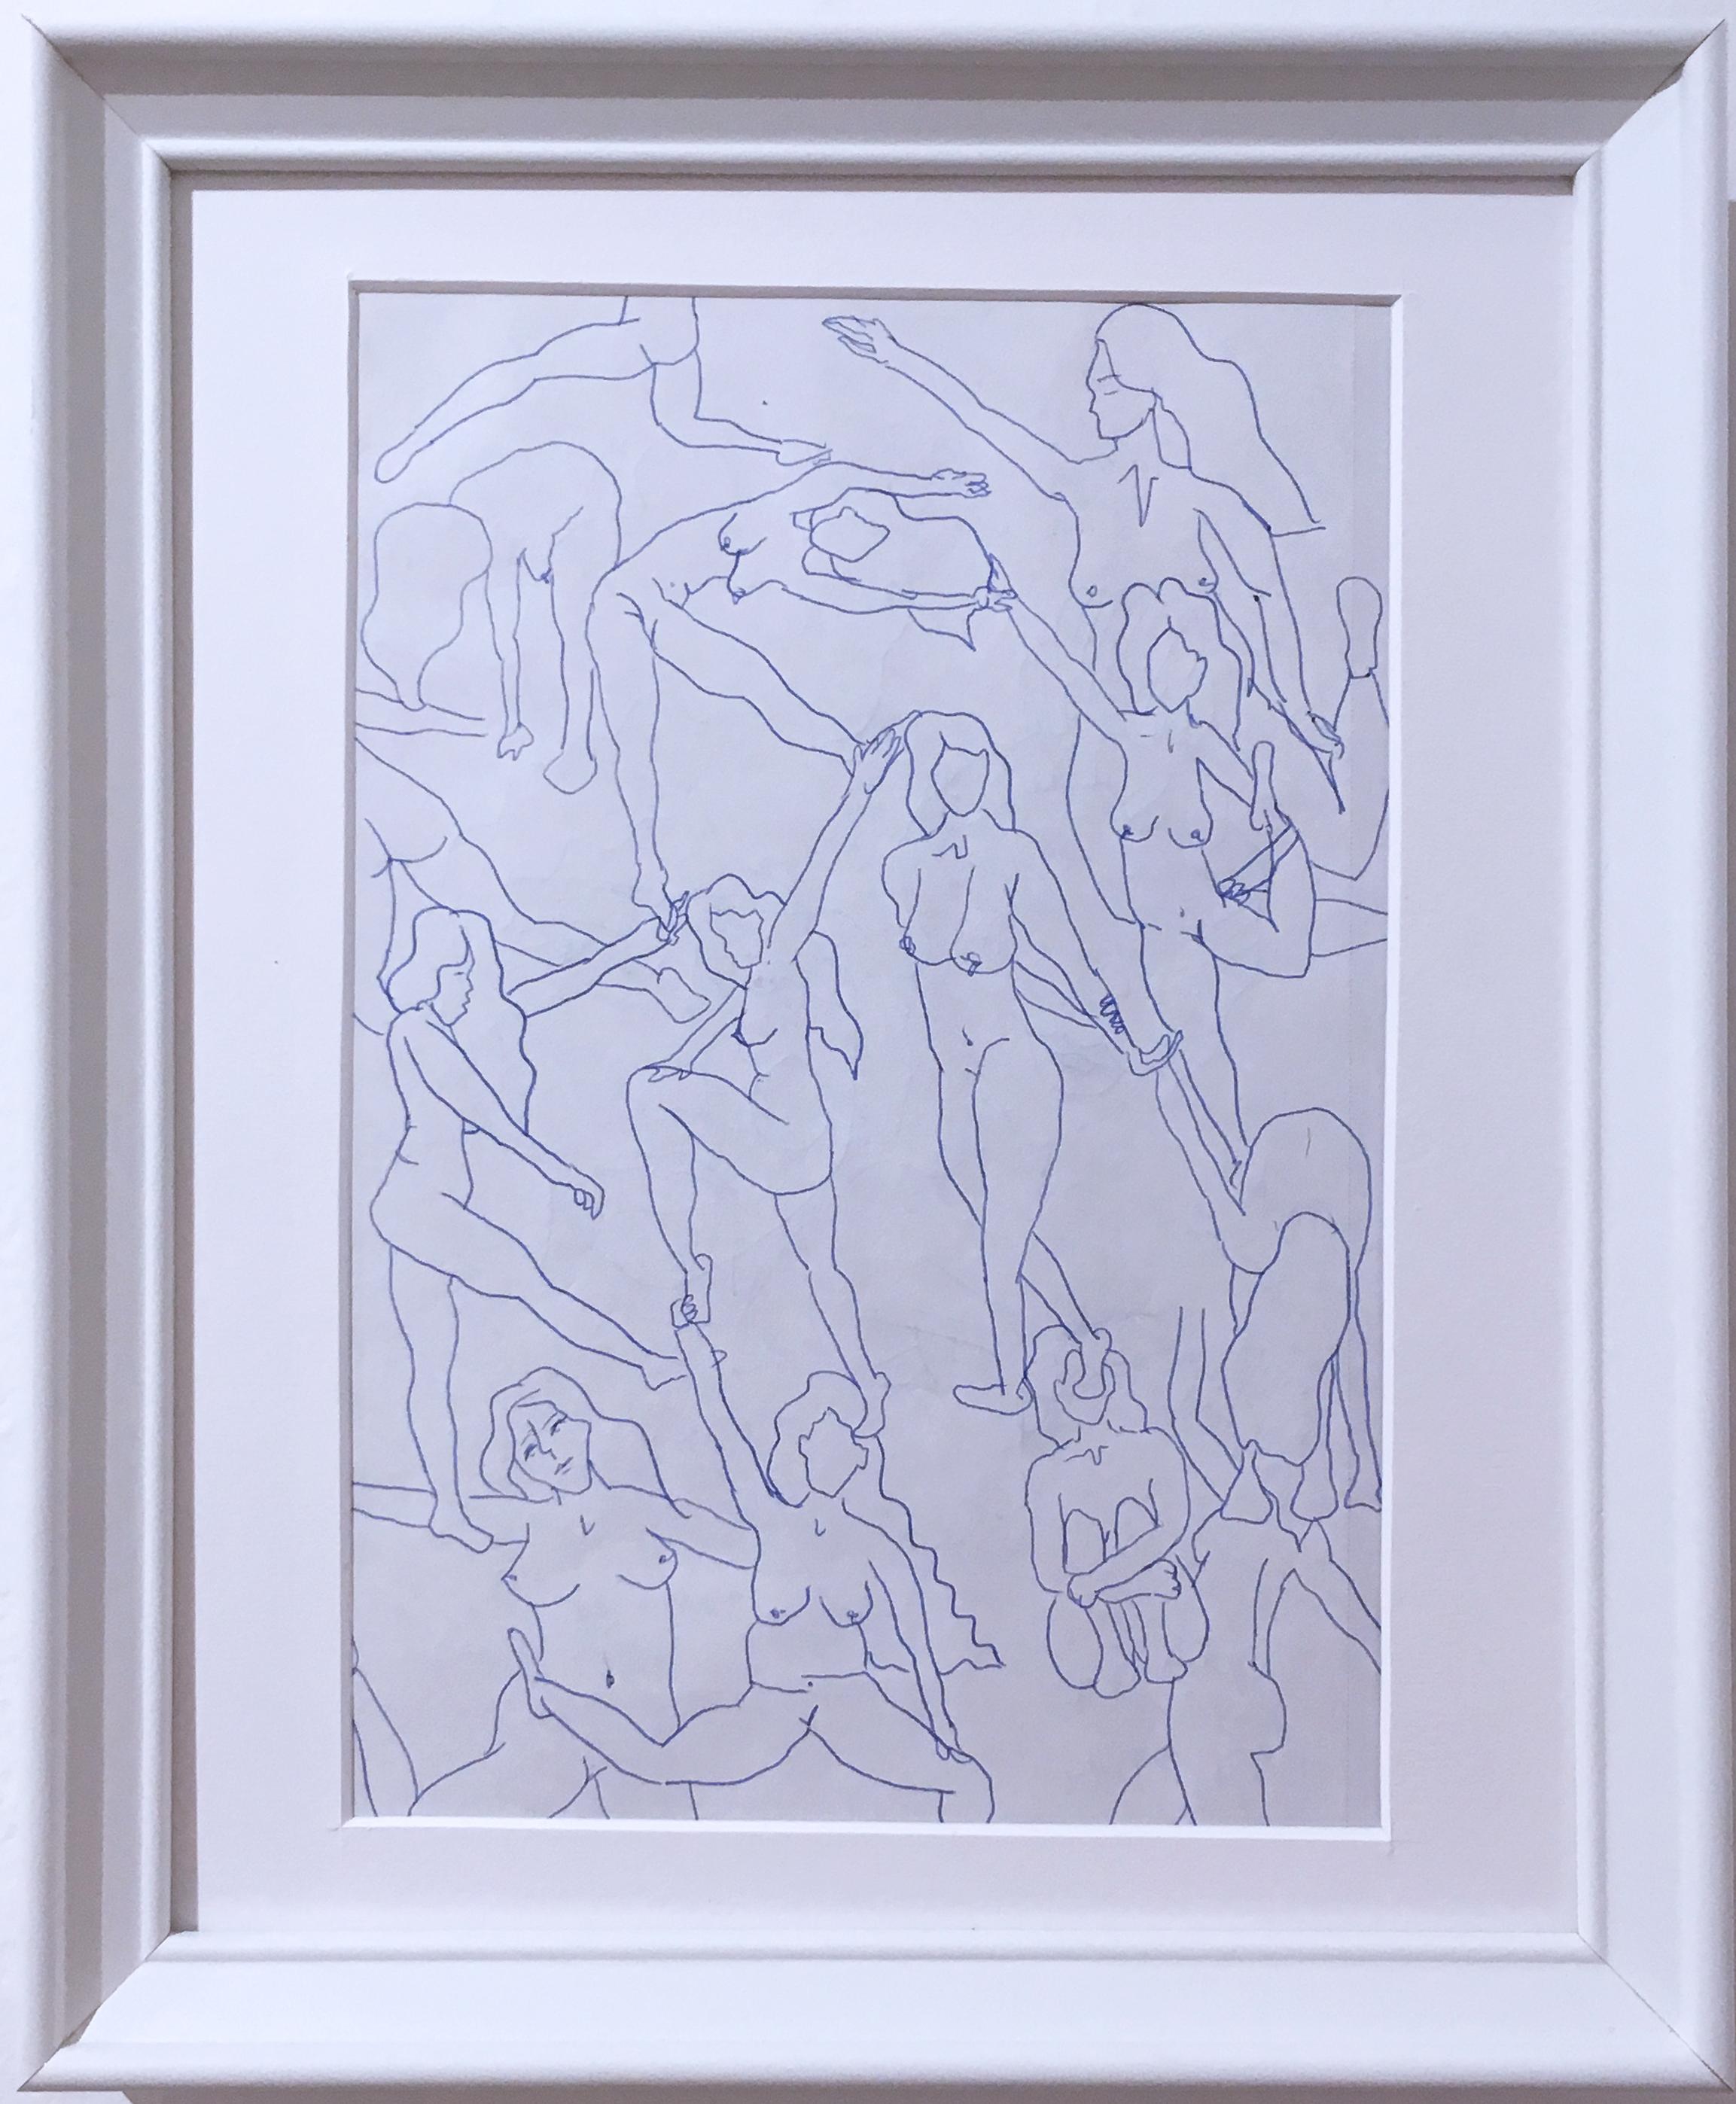 SarahGrace Nude – Blaue Akte I, Tusche auf Papier, blau-weiße Zeichnung, figurative Studie, Frauen posieren